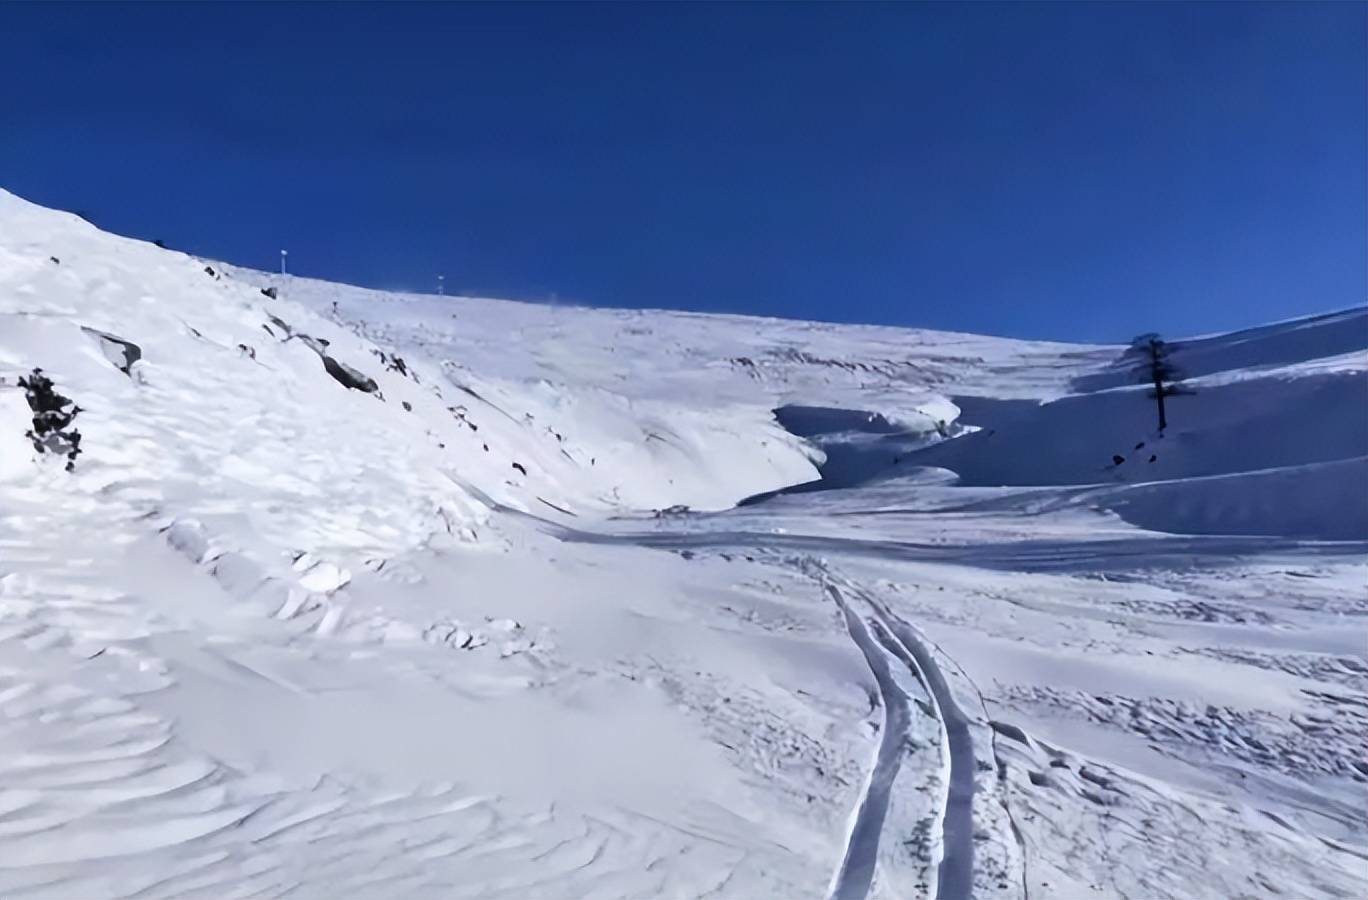 知名滑雪女教练在滑雪场不幸身亡,疑似为避让拍摄的雪友撞到石头